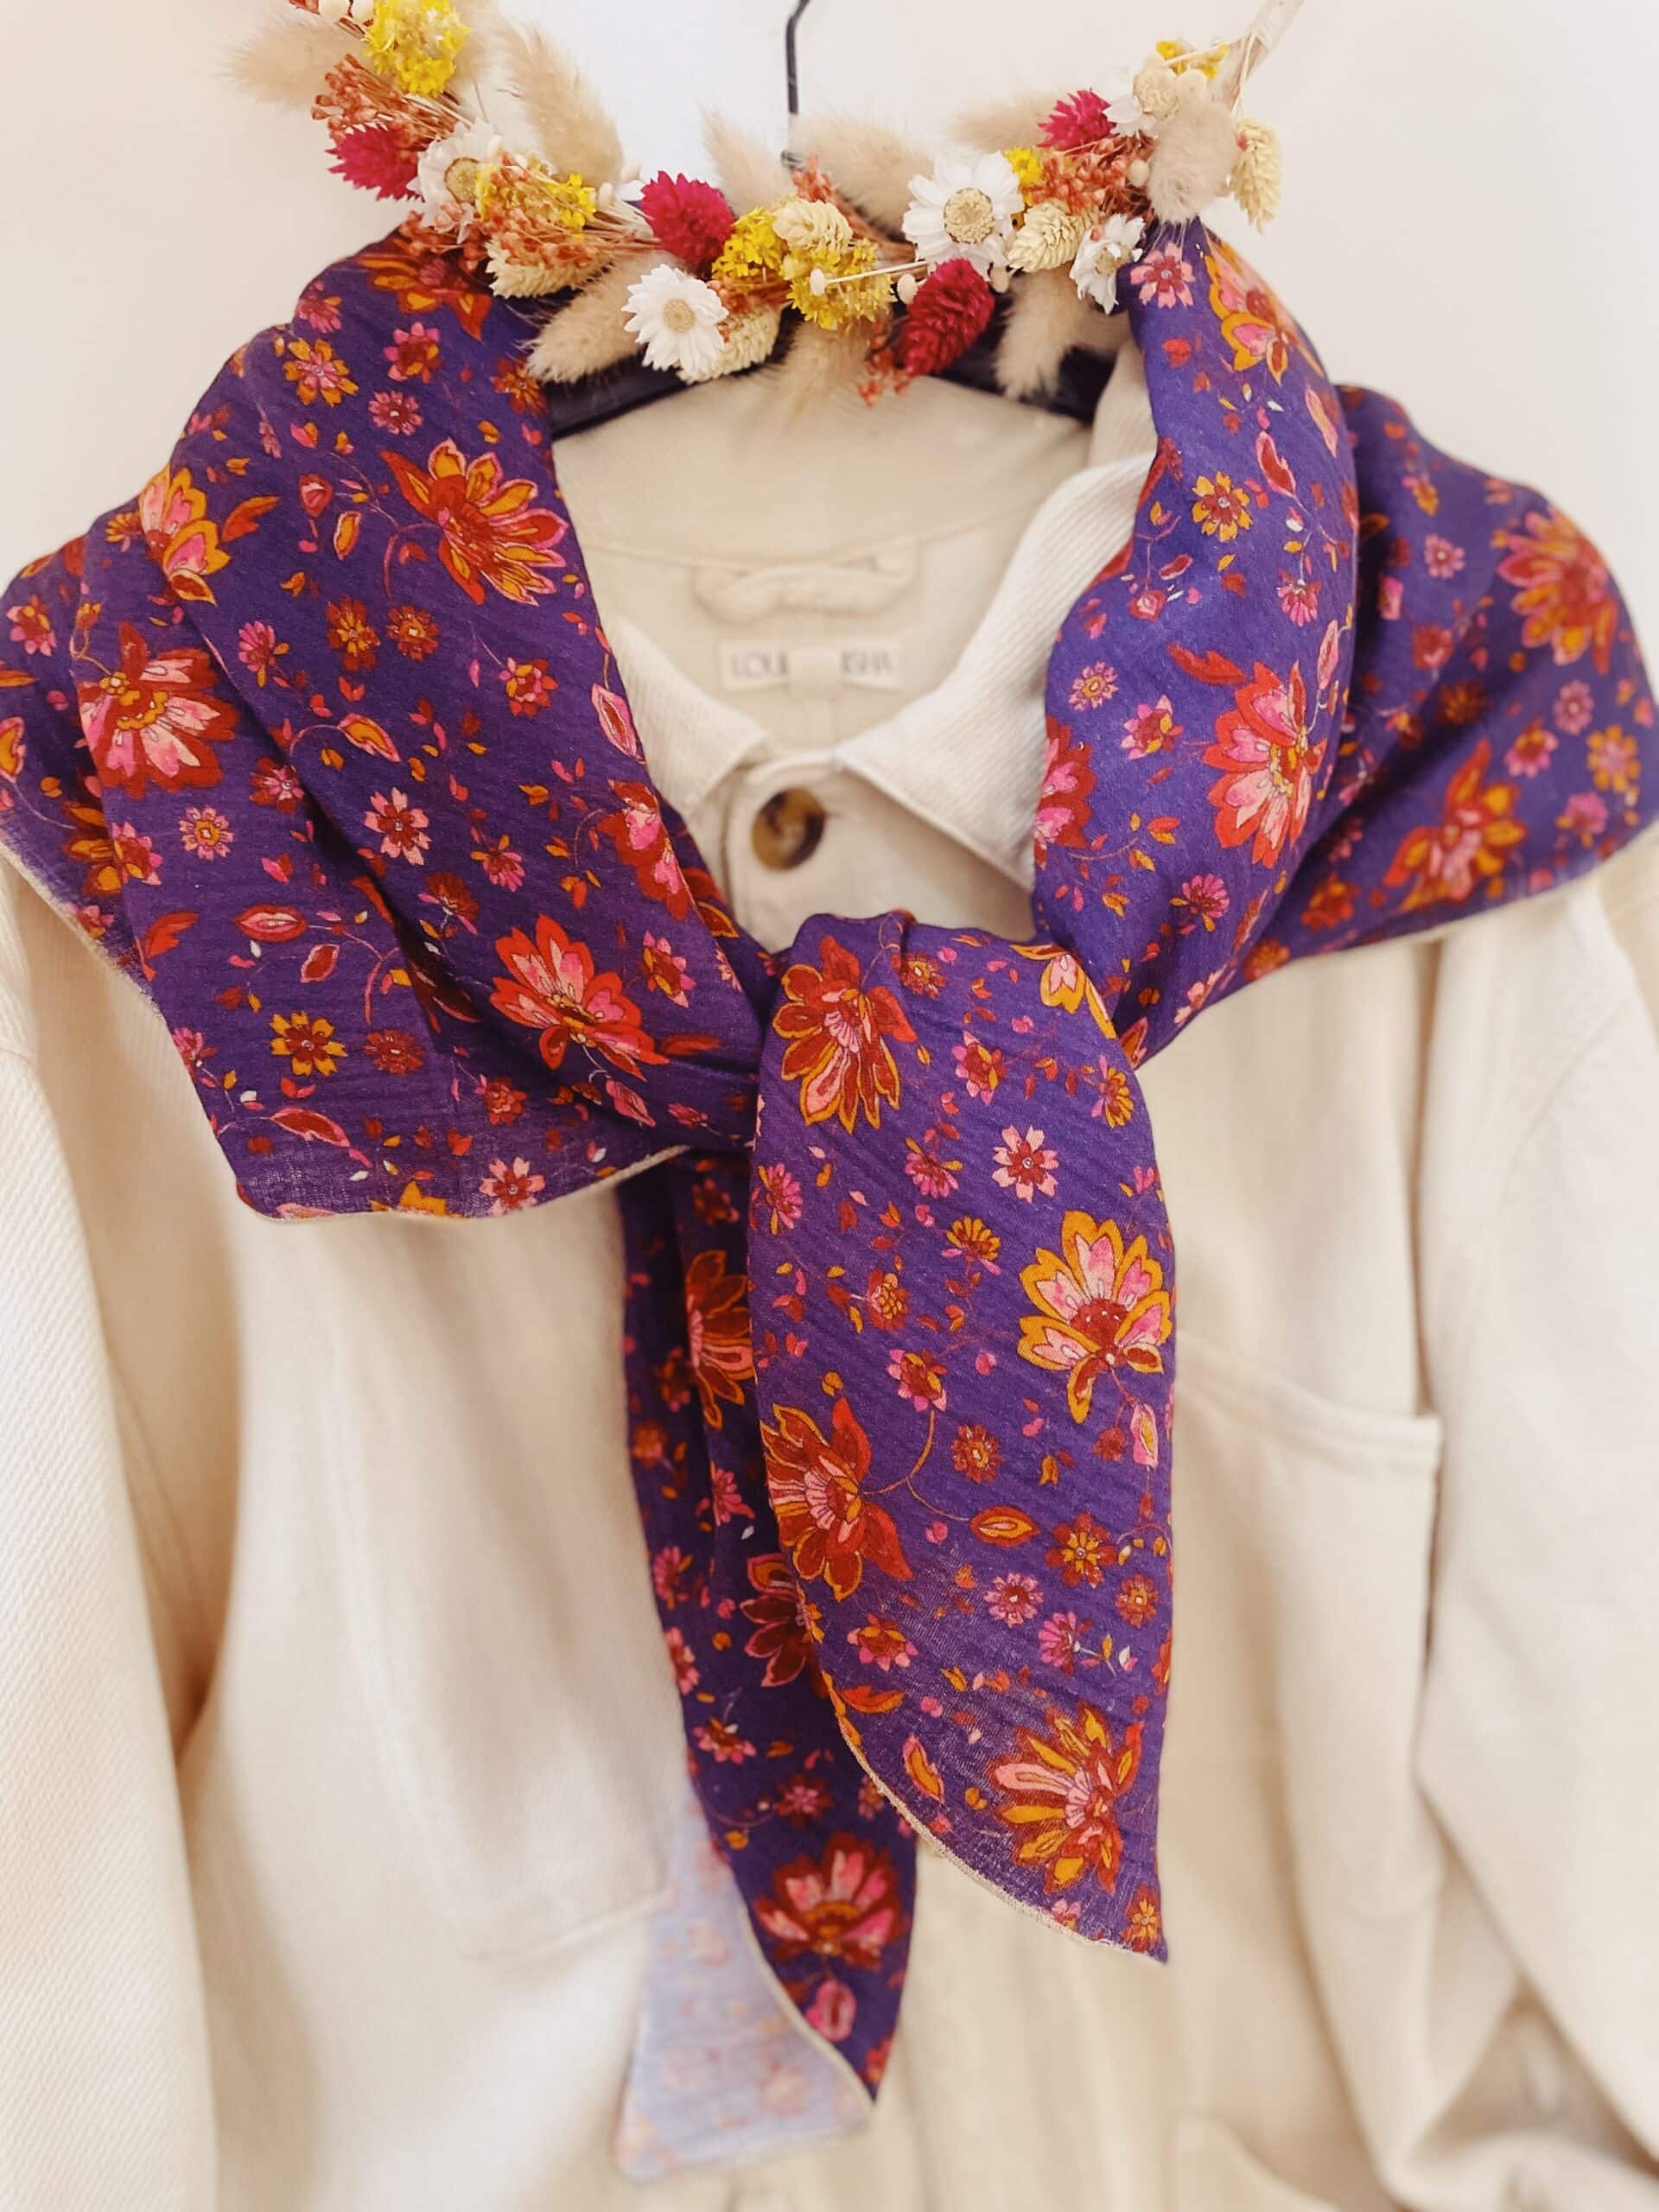 foulard fleuri tendance femme accessoire made in France en coton imprimé fleurs et paisley façon block print indien © du vent dans mes valises 11